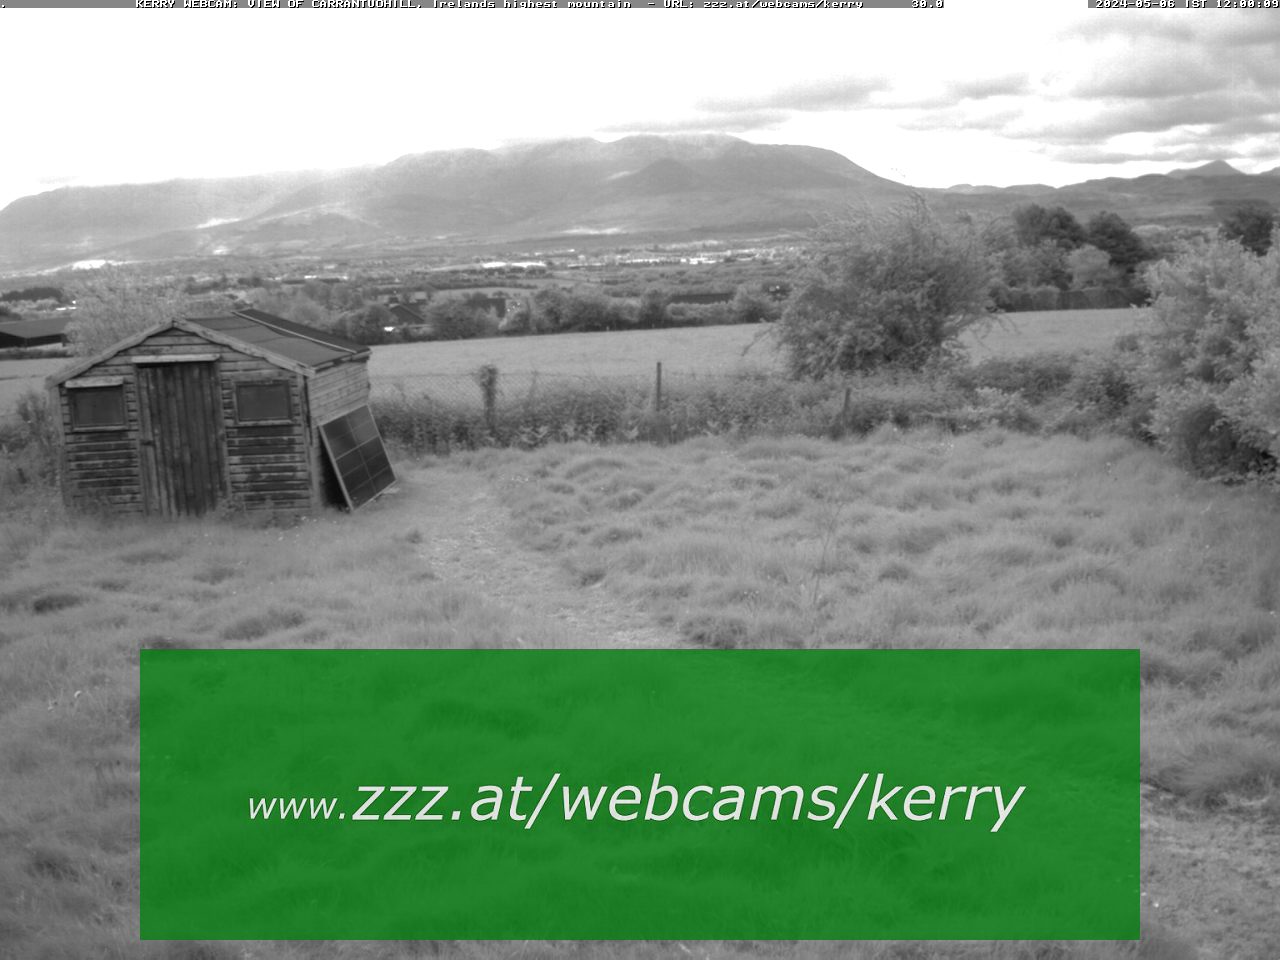 Kerry Webcam